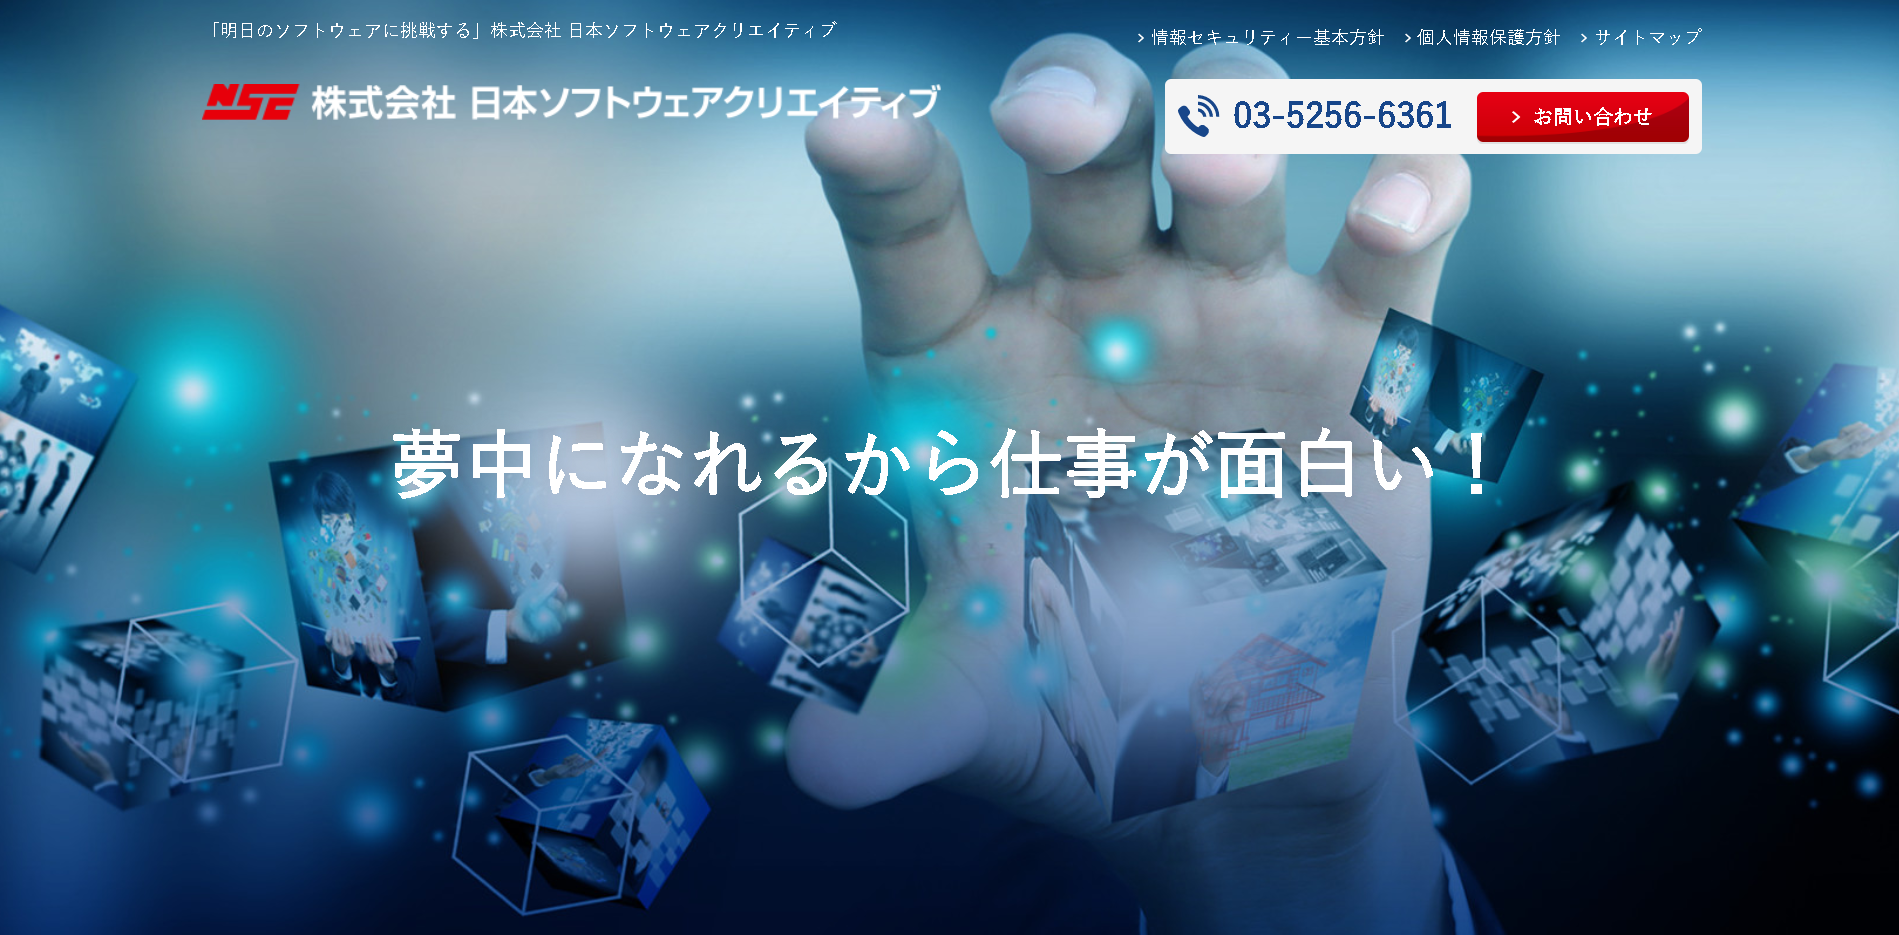 株式会社日本ソフトウェアクリエイティブの株式会社日本ソフトウェアクリエイティブサービス